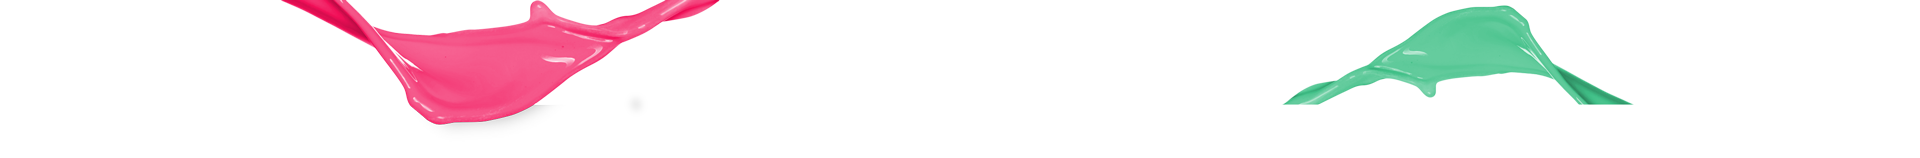 ASM Logo Design